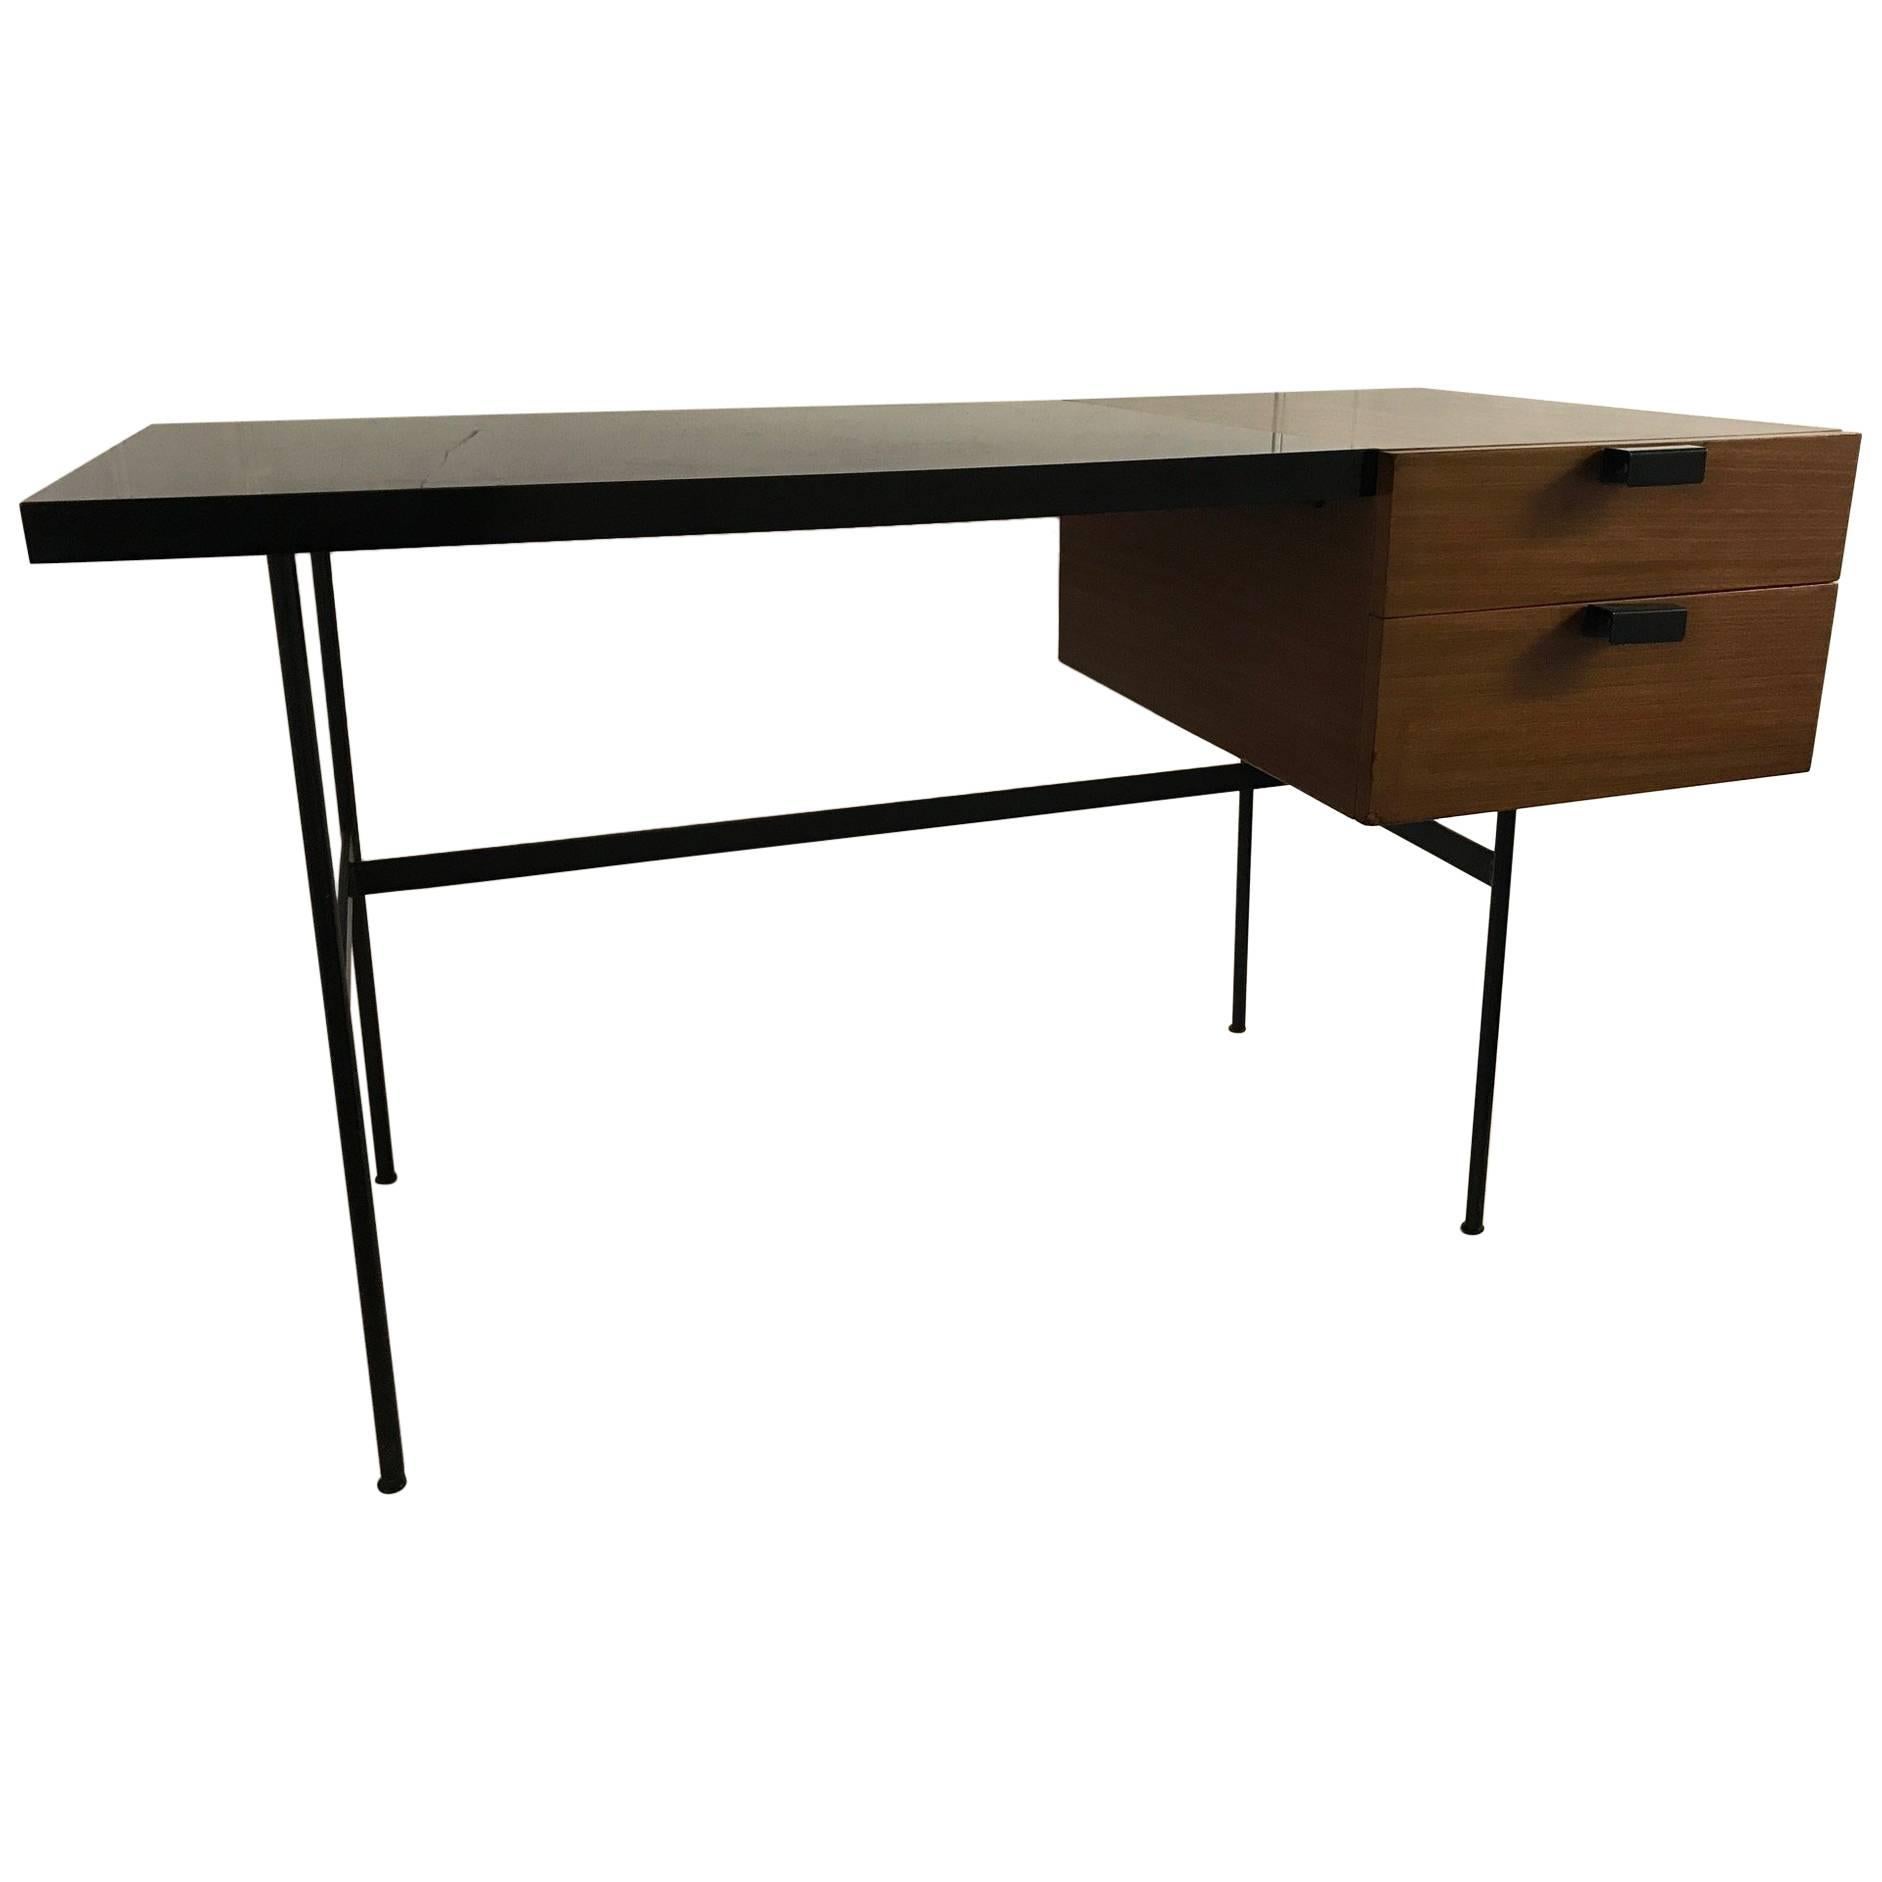 Desk CM141 by Pierre Paulin